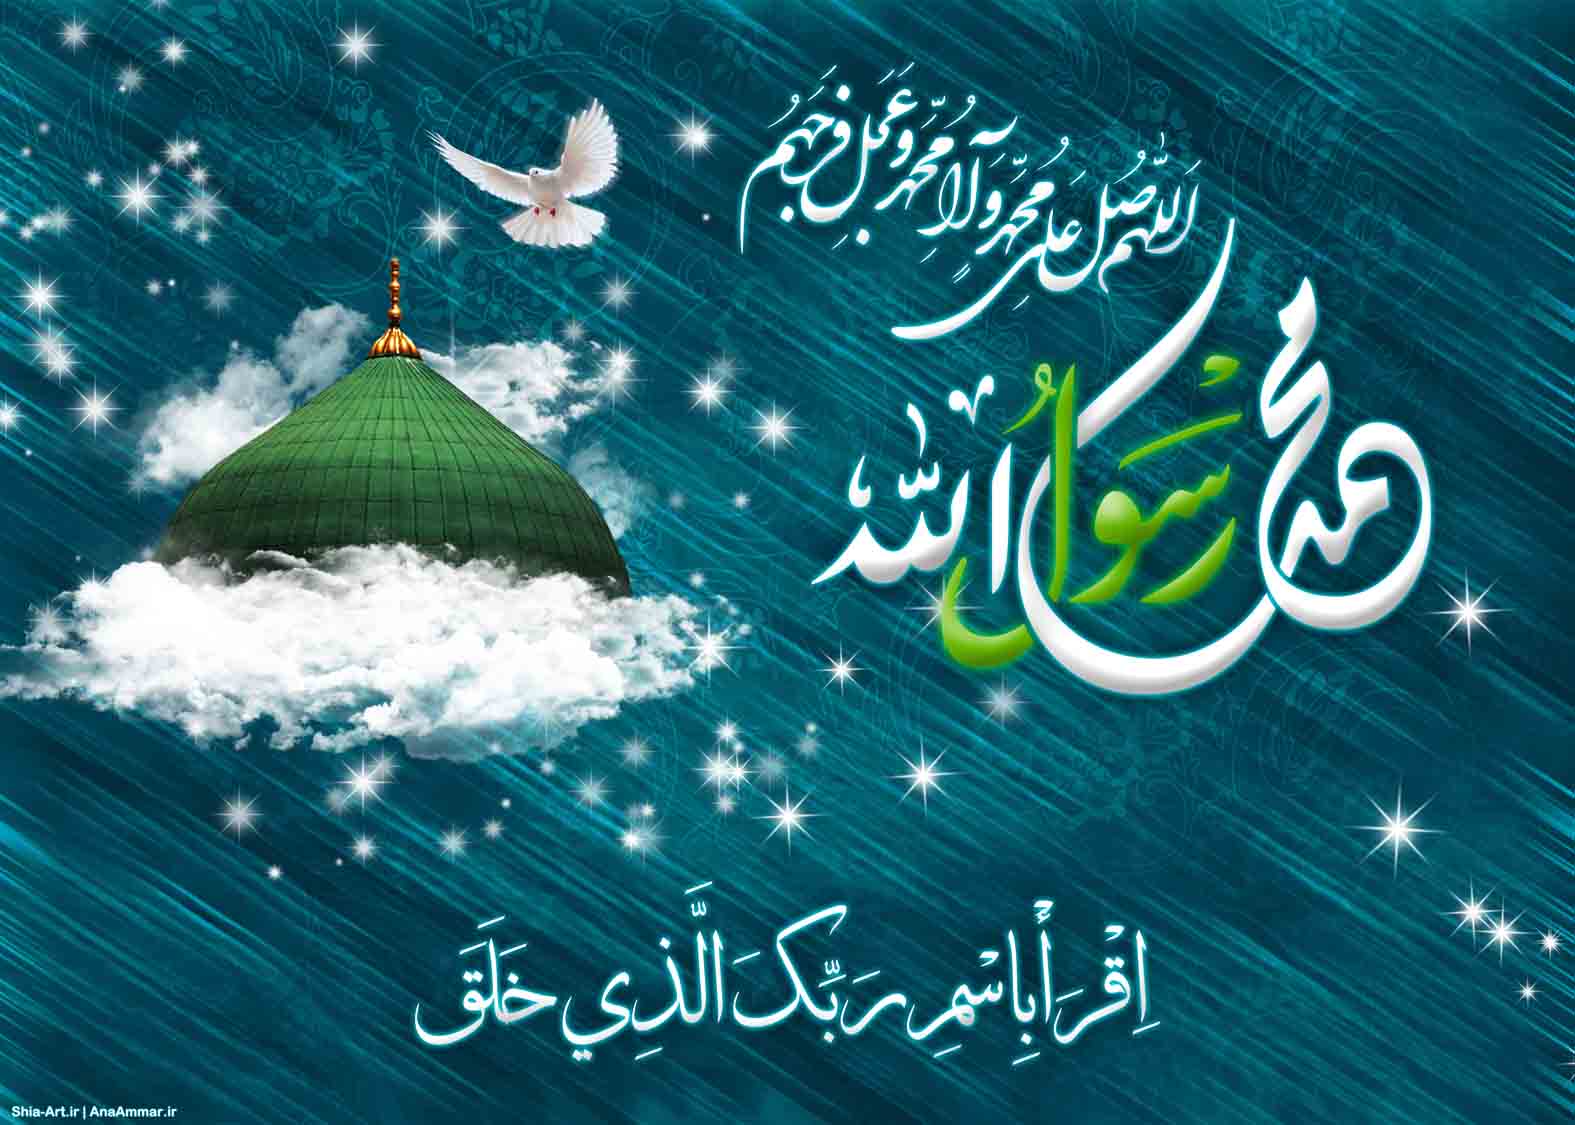 فرا رسیدن عید مبعث بر همه مبارک باد / پیامک تبریک